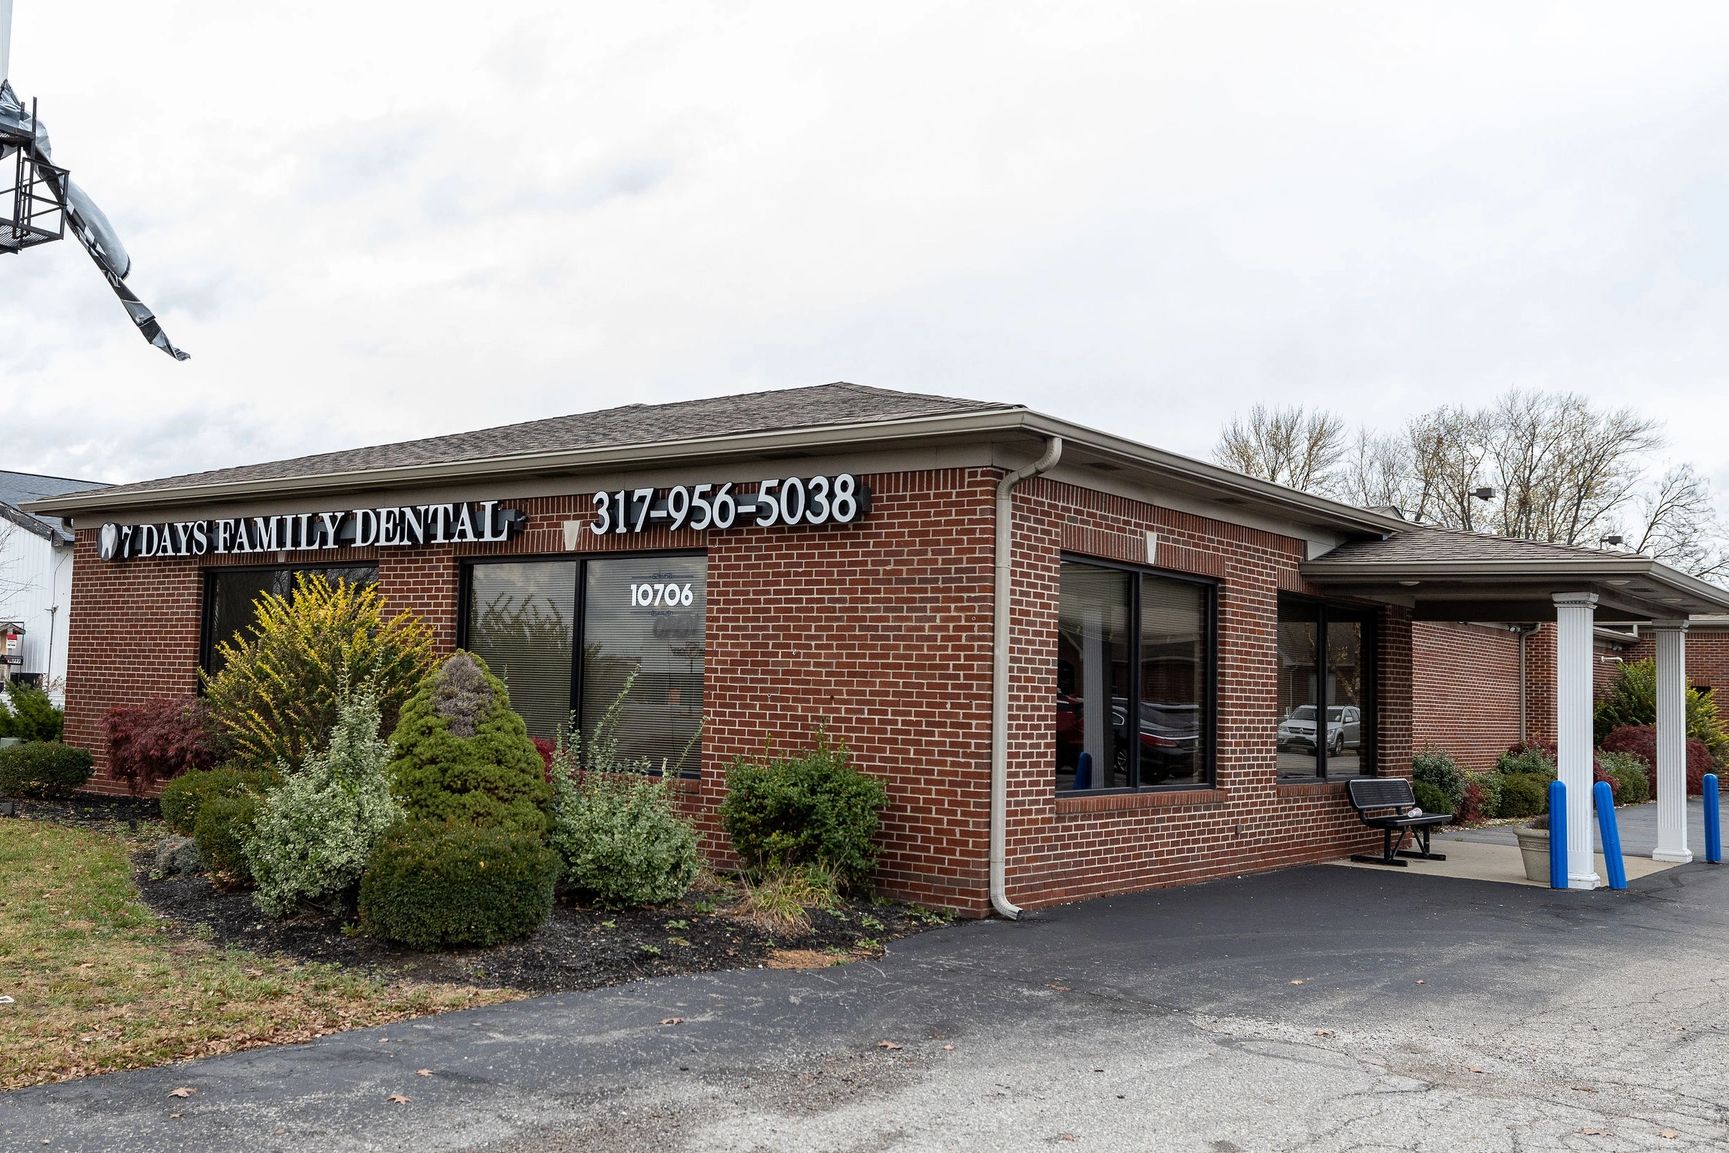 Dentist in Avon
Dentist in Brownsburg
Dentist in Plainfield
Dentist in Danville
Dentist in 46123